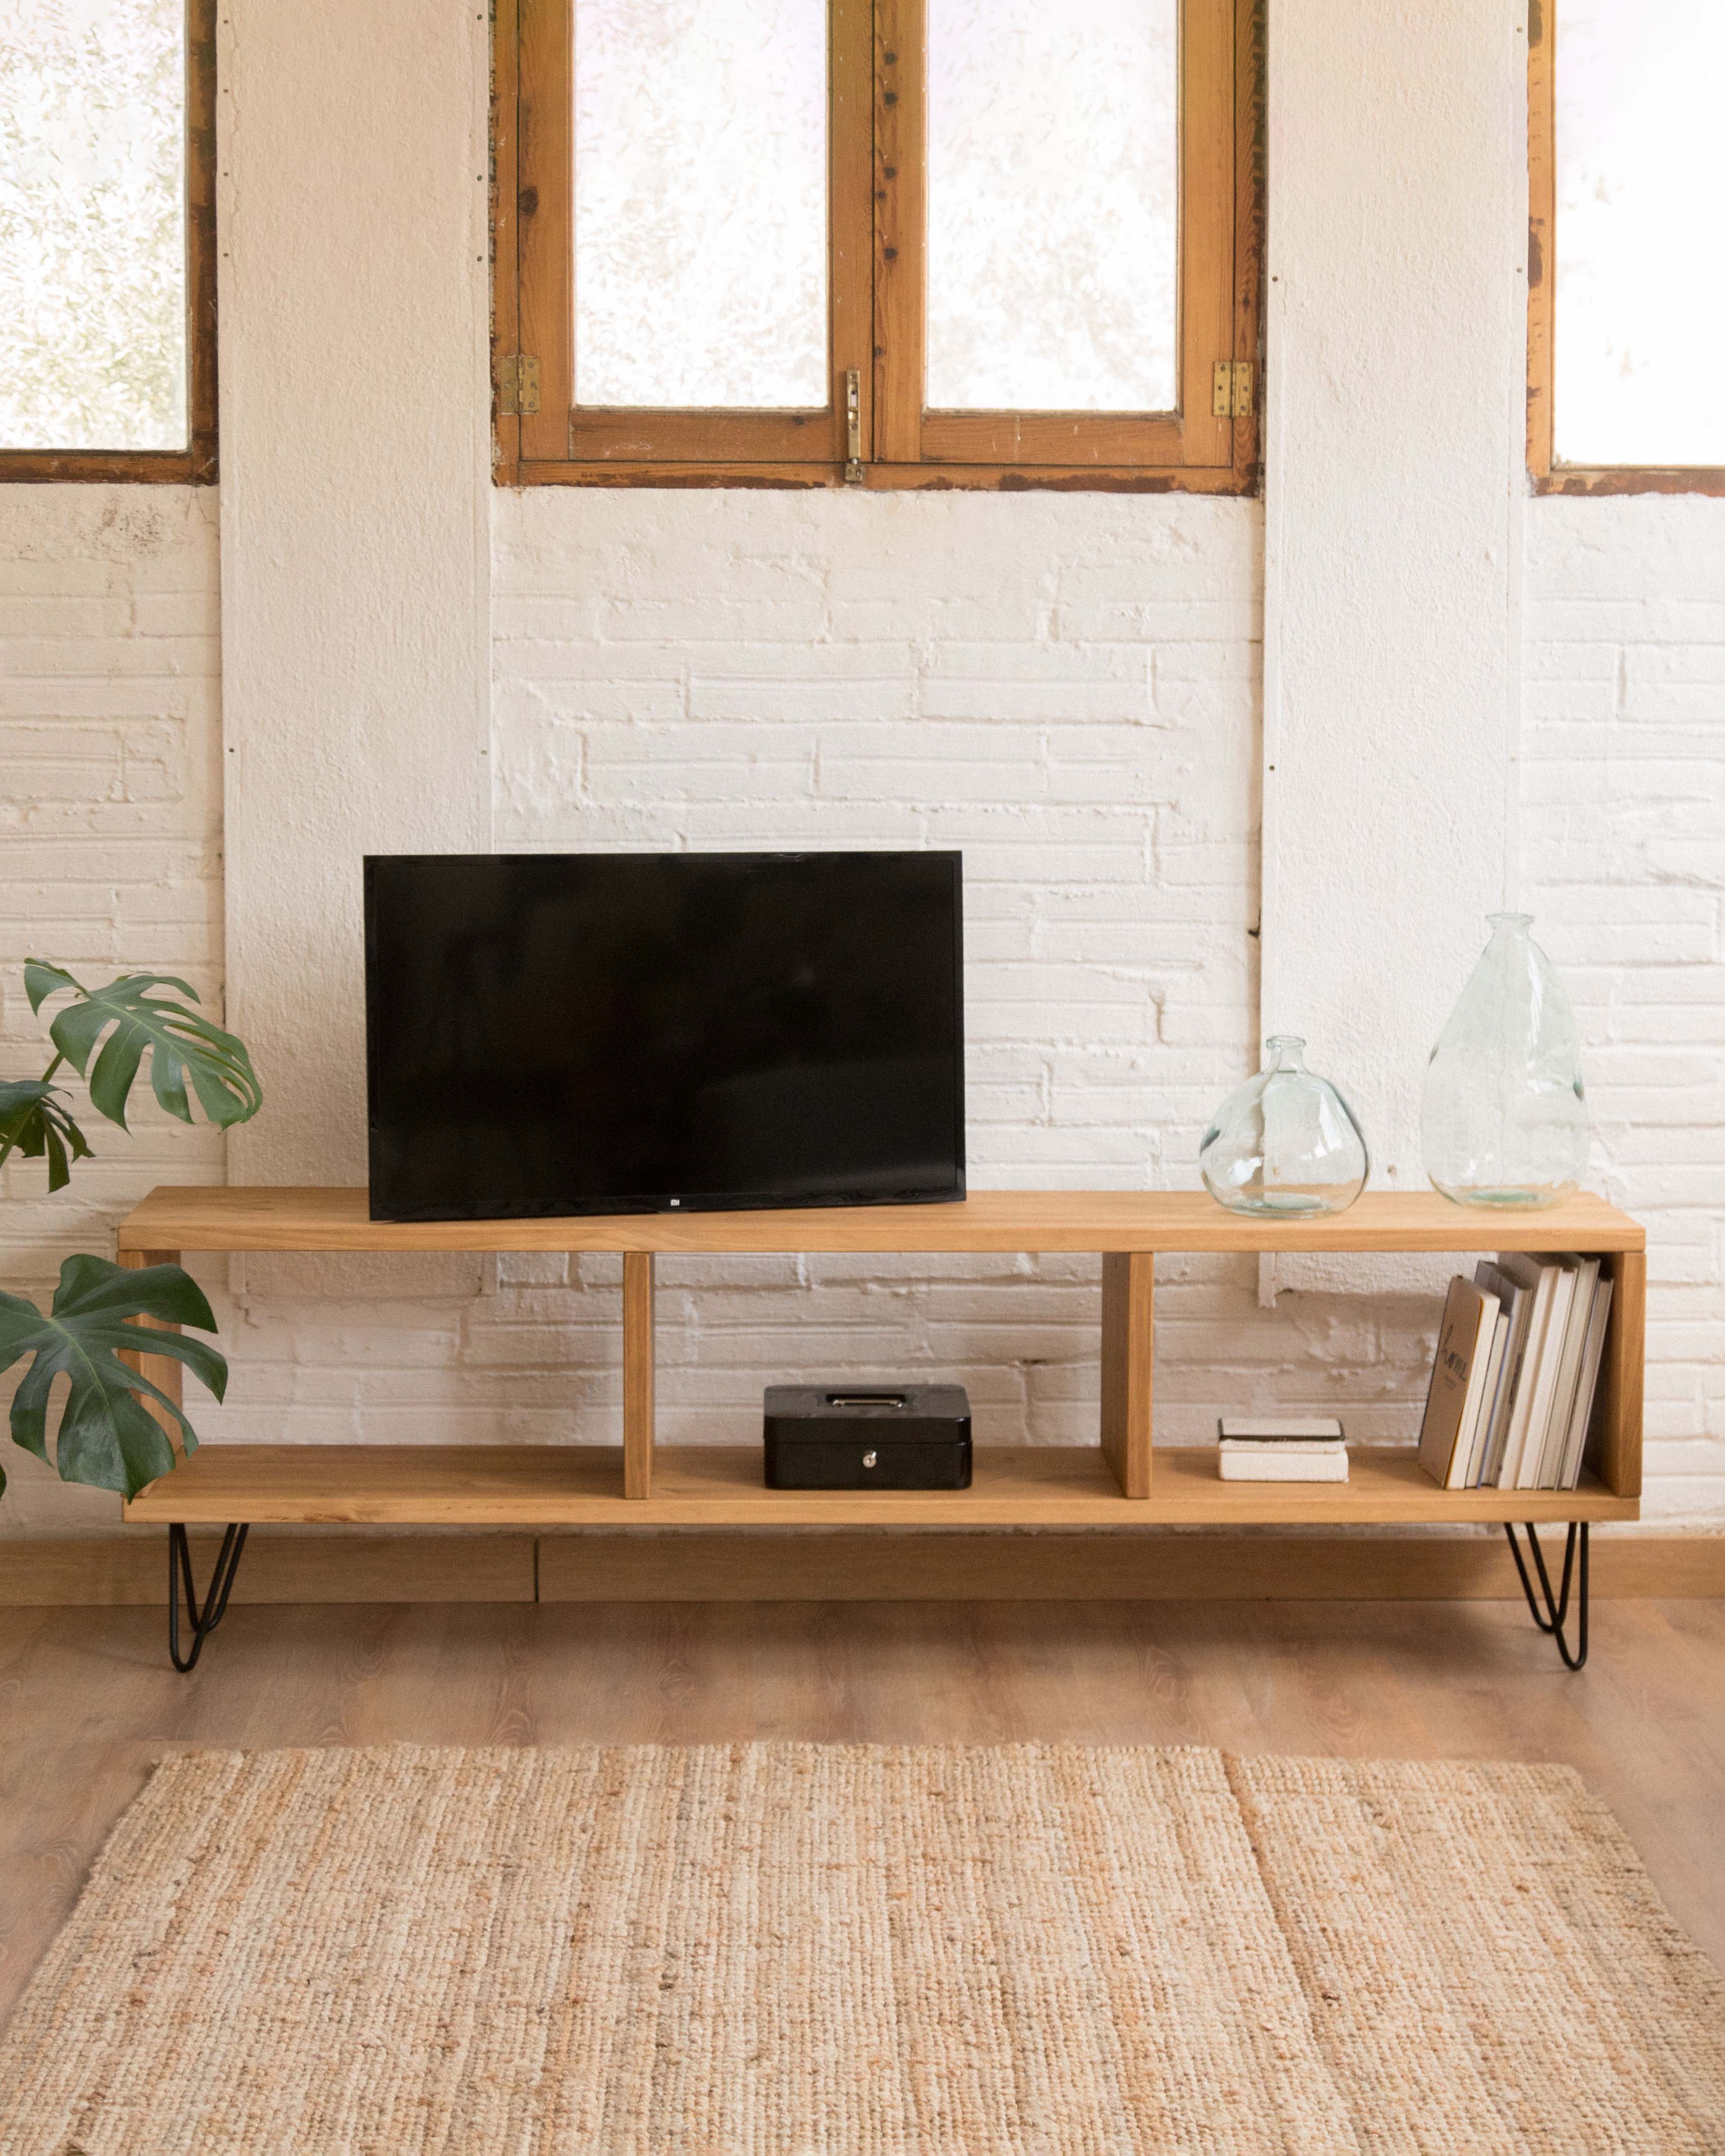 Comprar mueble TV barato|Precio muebles TV en